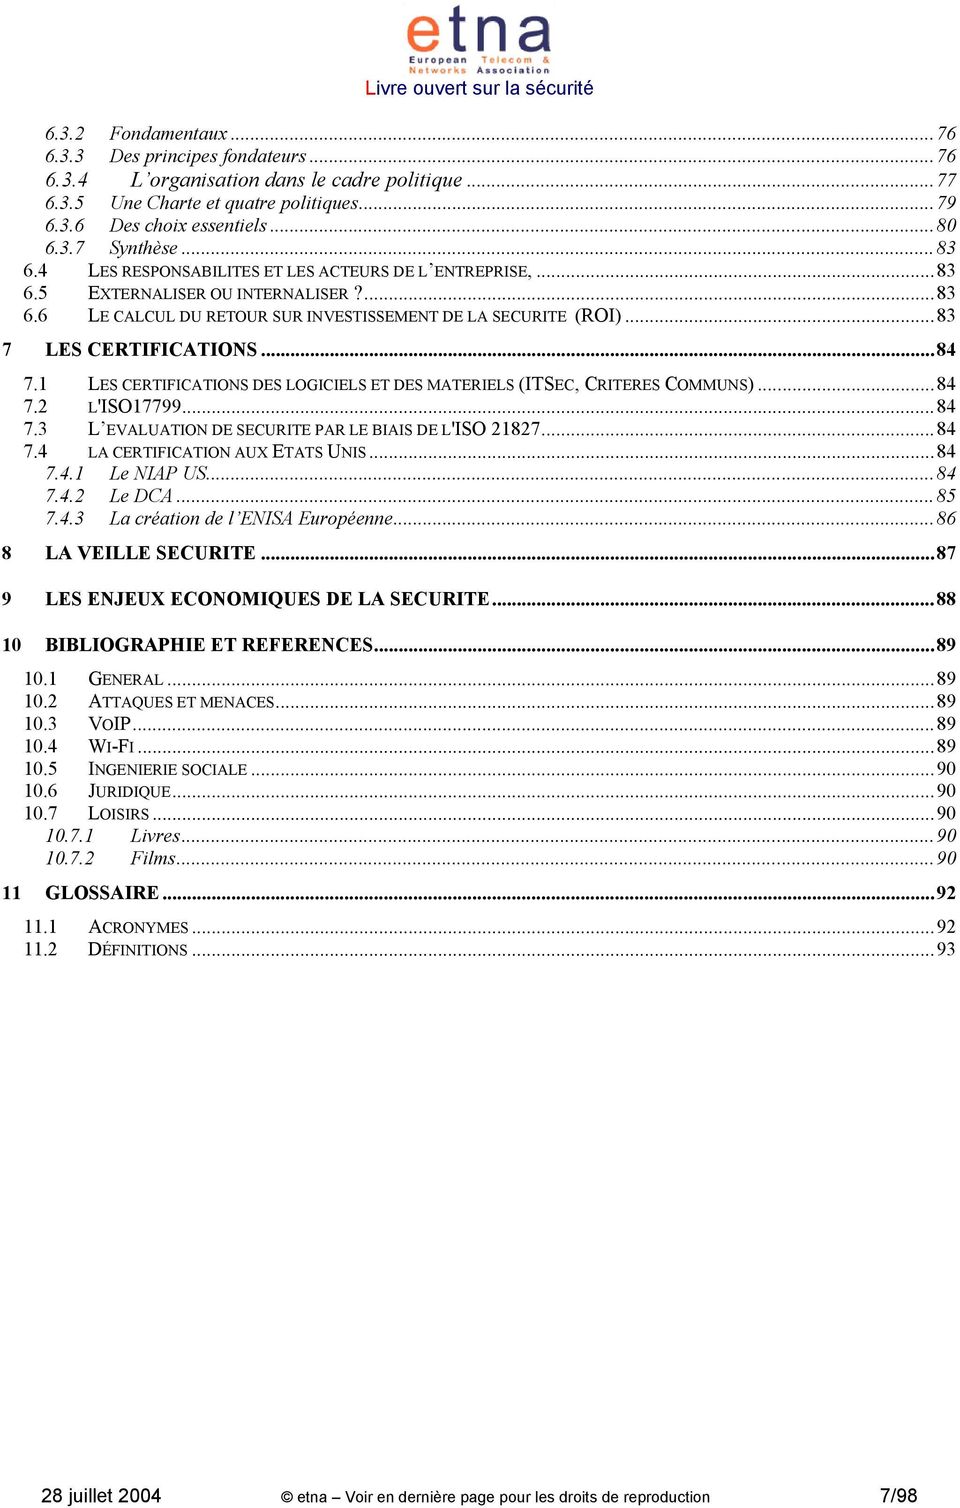 1 LES CERTIFICATIONS DES LOGICIELS ET DES MATERIELS (ITSEC, CRITERES COMMUNS)...84 7.2 L'ISO17799...84 7.3 L EVALUATION DE SECURITE PAR LE BIAIS DE L'ISO 21827...84 7.4 LA CERTIFICATION AUX ETATS UNIS.